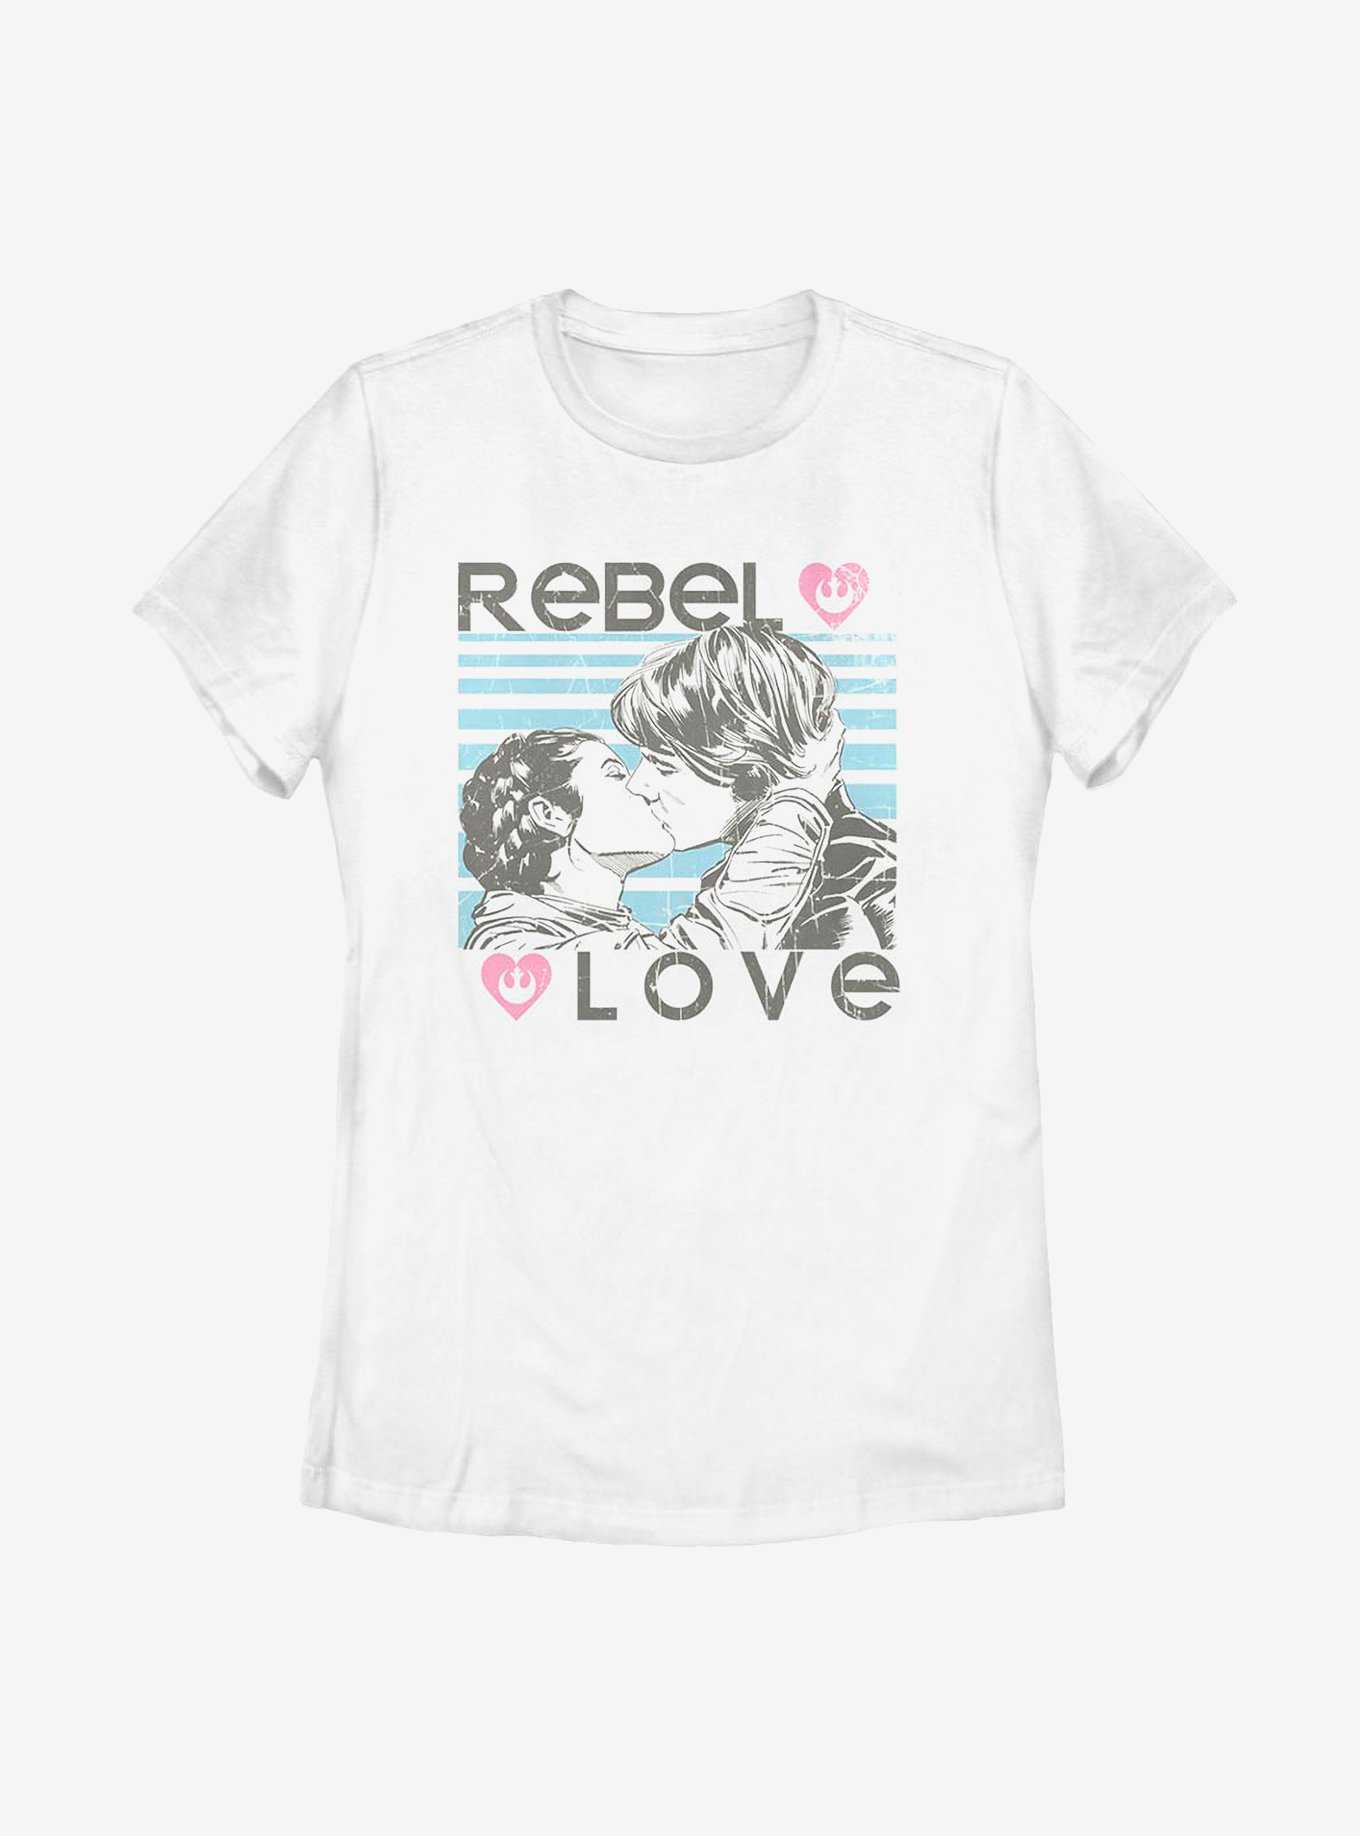 Star Wars Rebel Love Womens T-Shirt, , hi-res